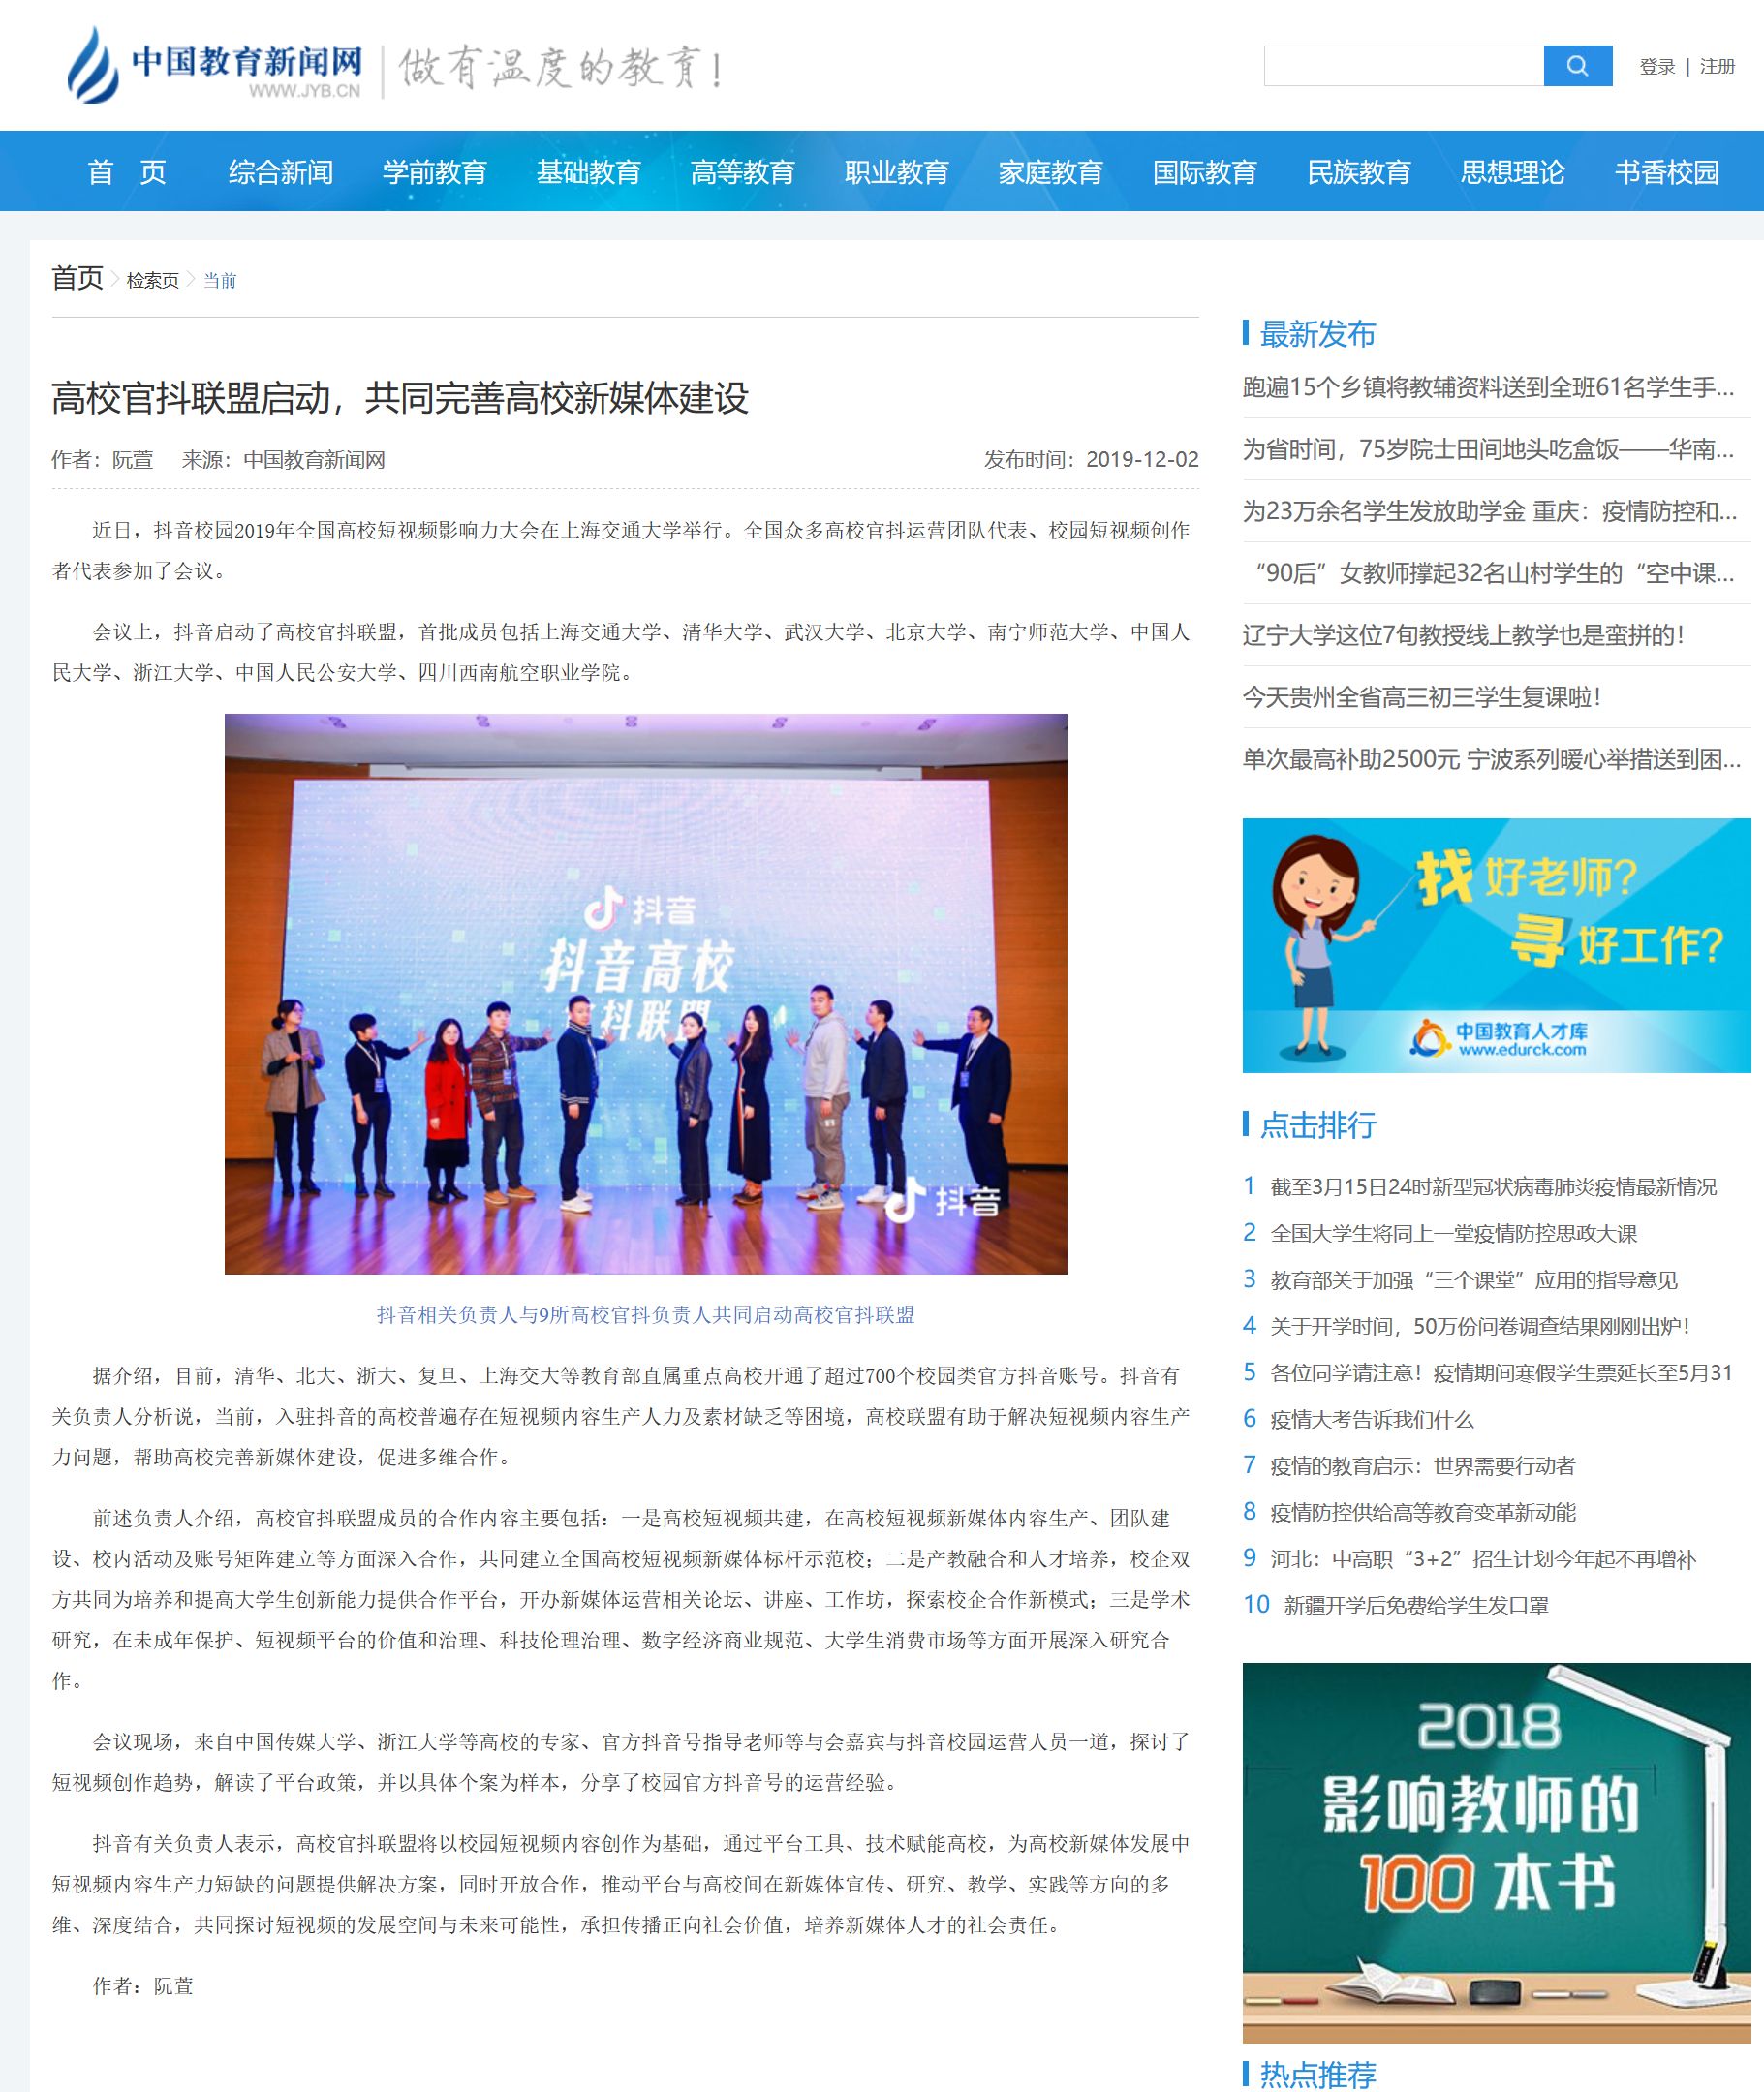 新闻资讯中国教育报道最近教育头条新闻